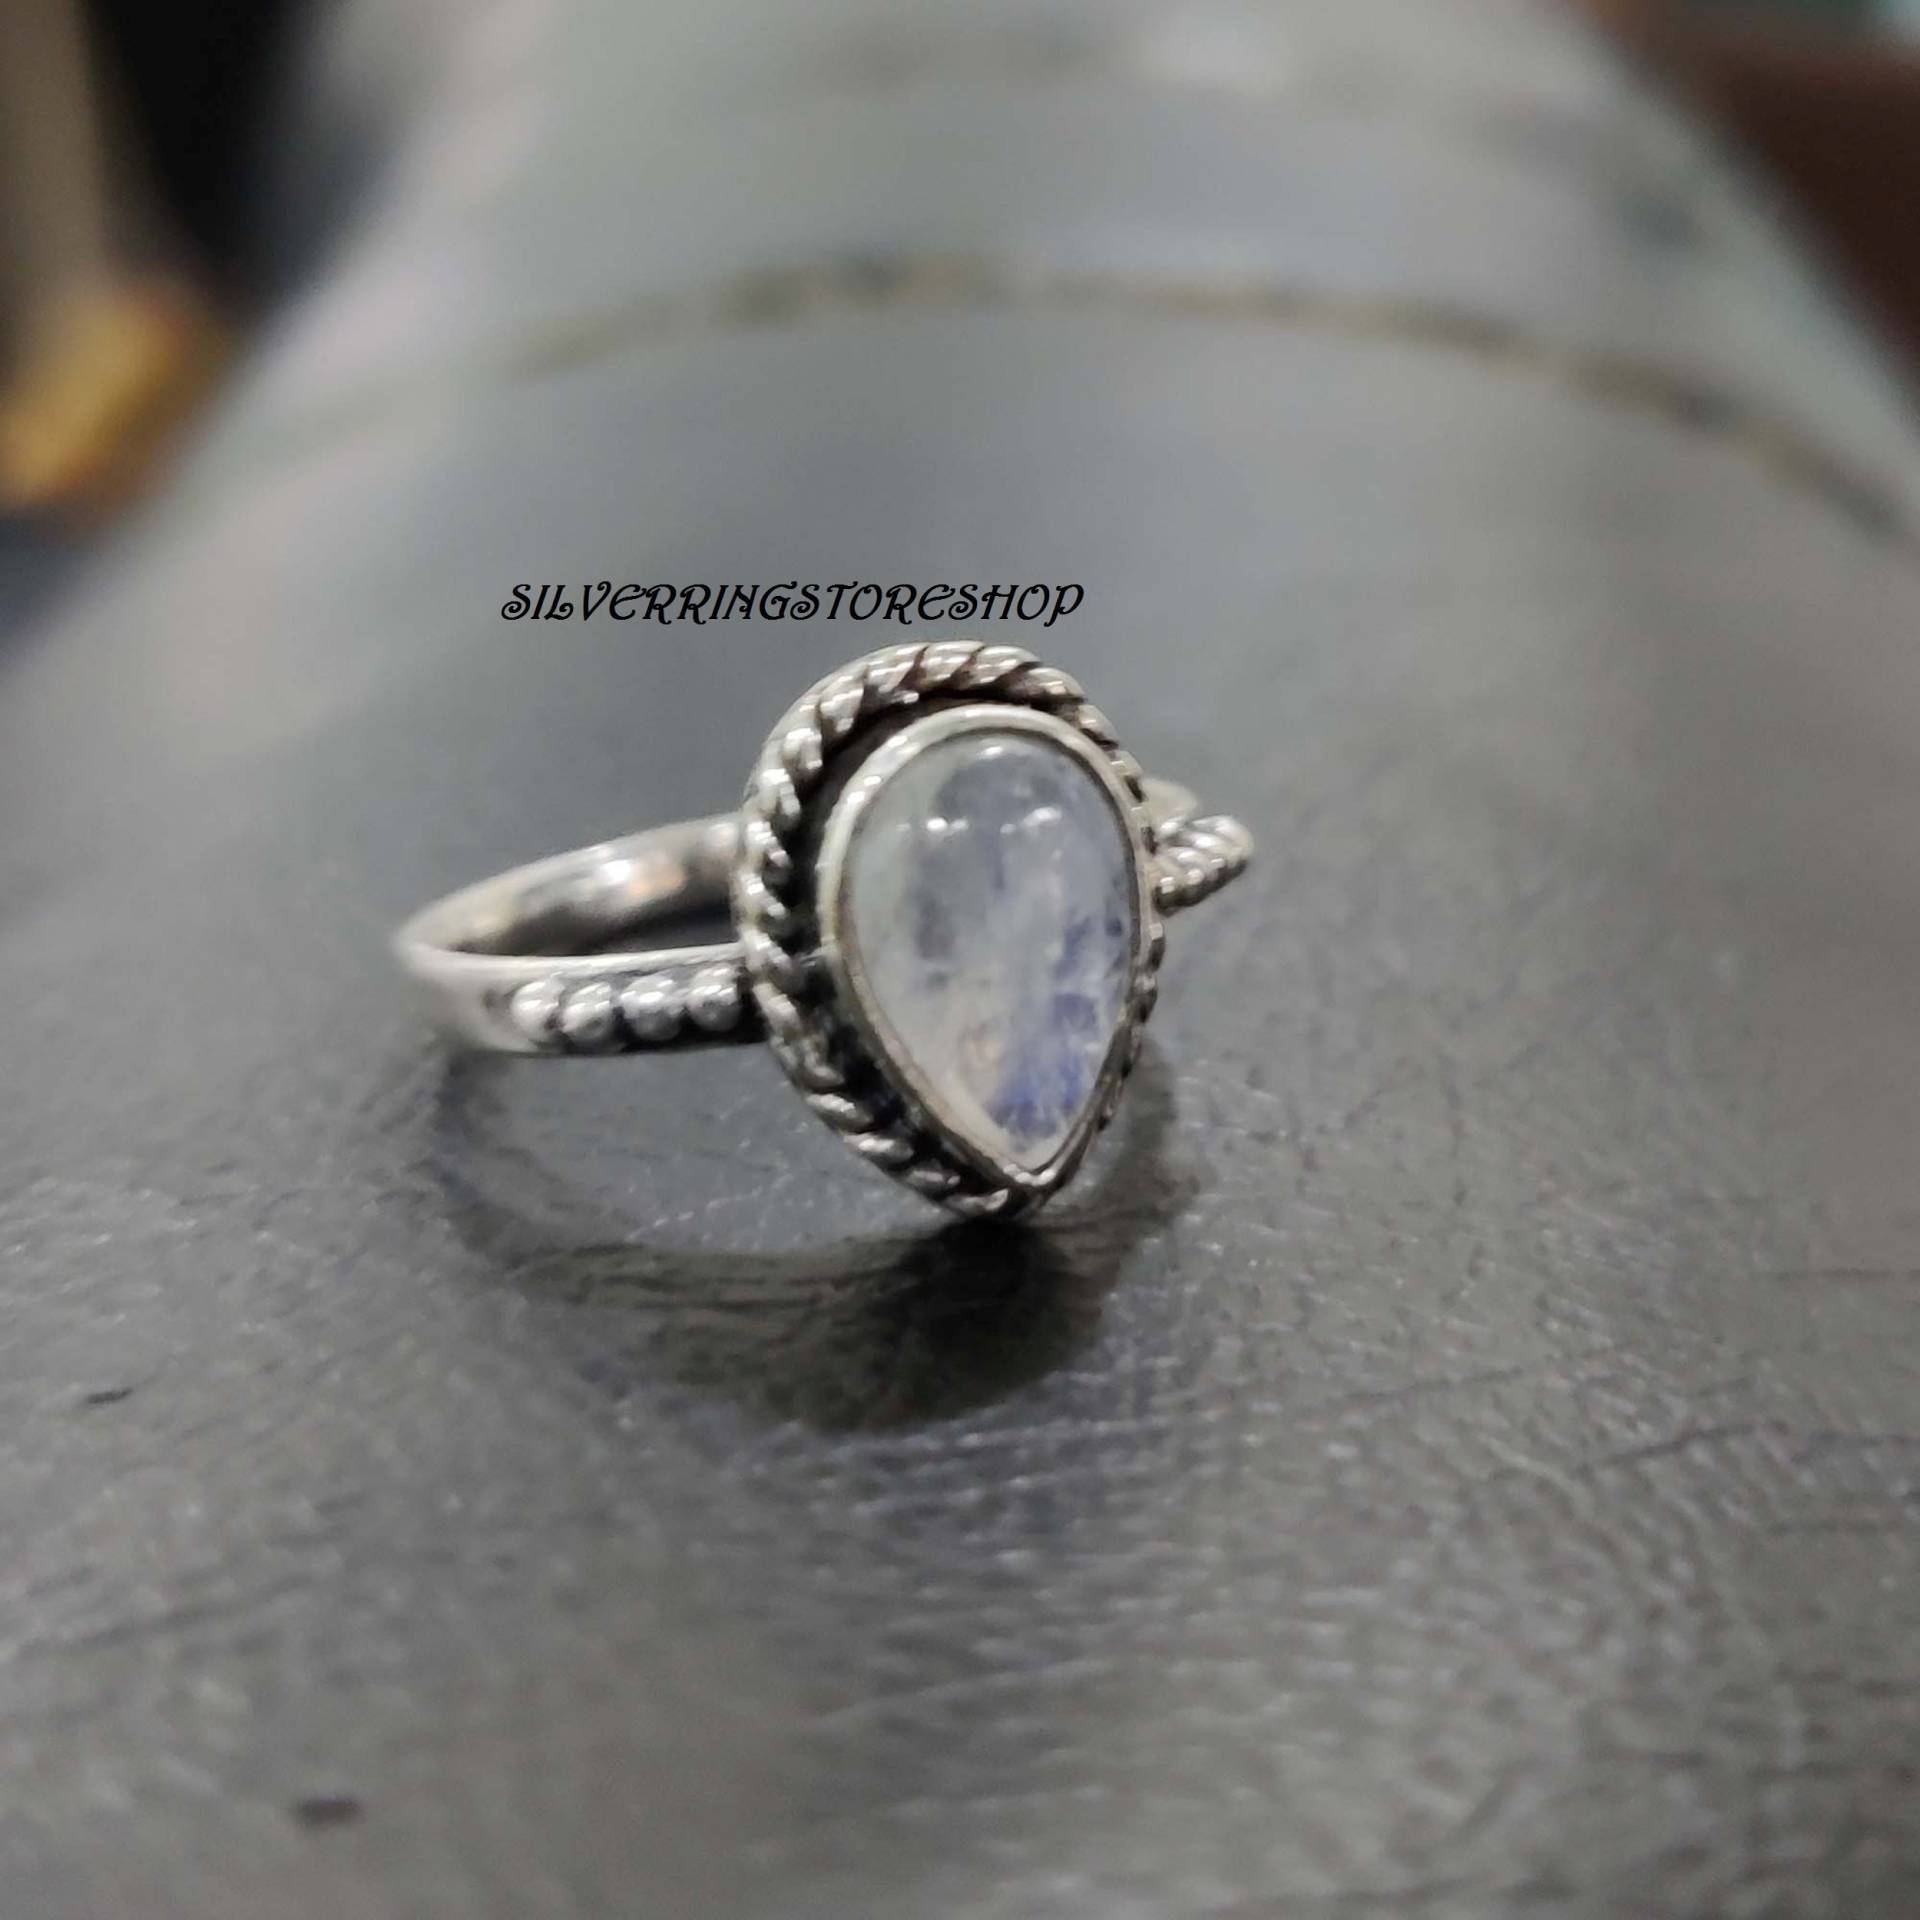 Kristallstein Ring, 925 Sterling Silber Statement Bandring, Boho Frauen Sorgenring, Edelstein Geschenk Für Sie von silverringstoreshop